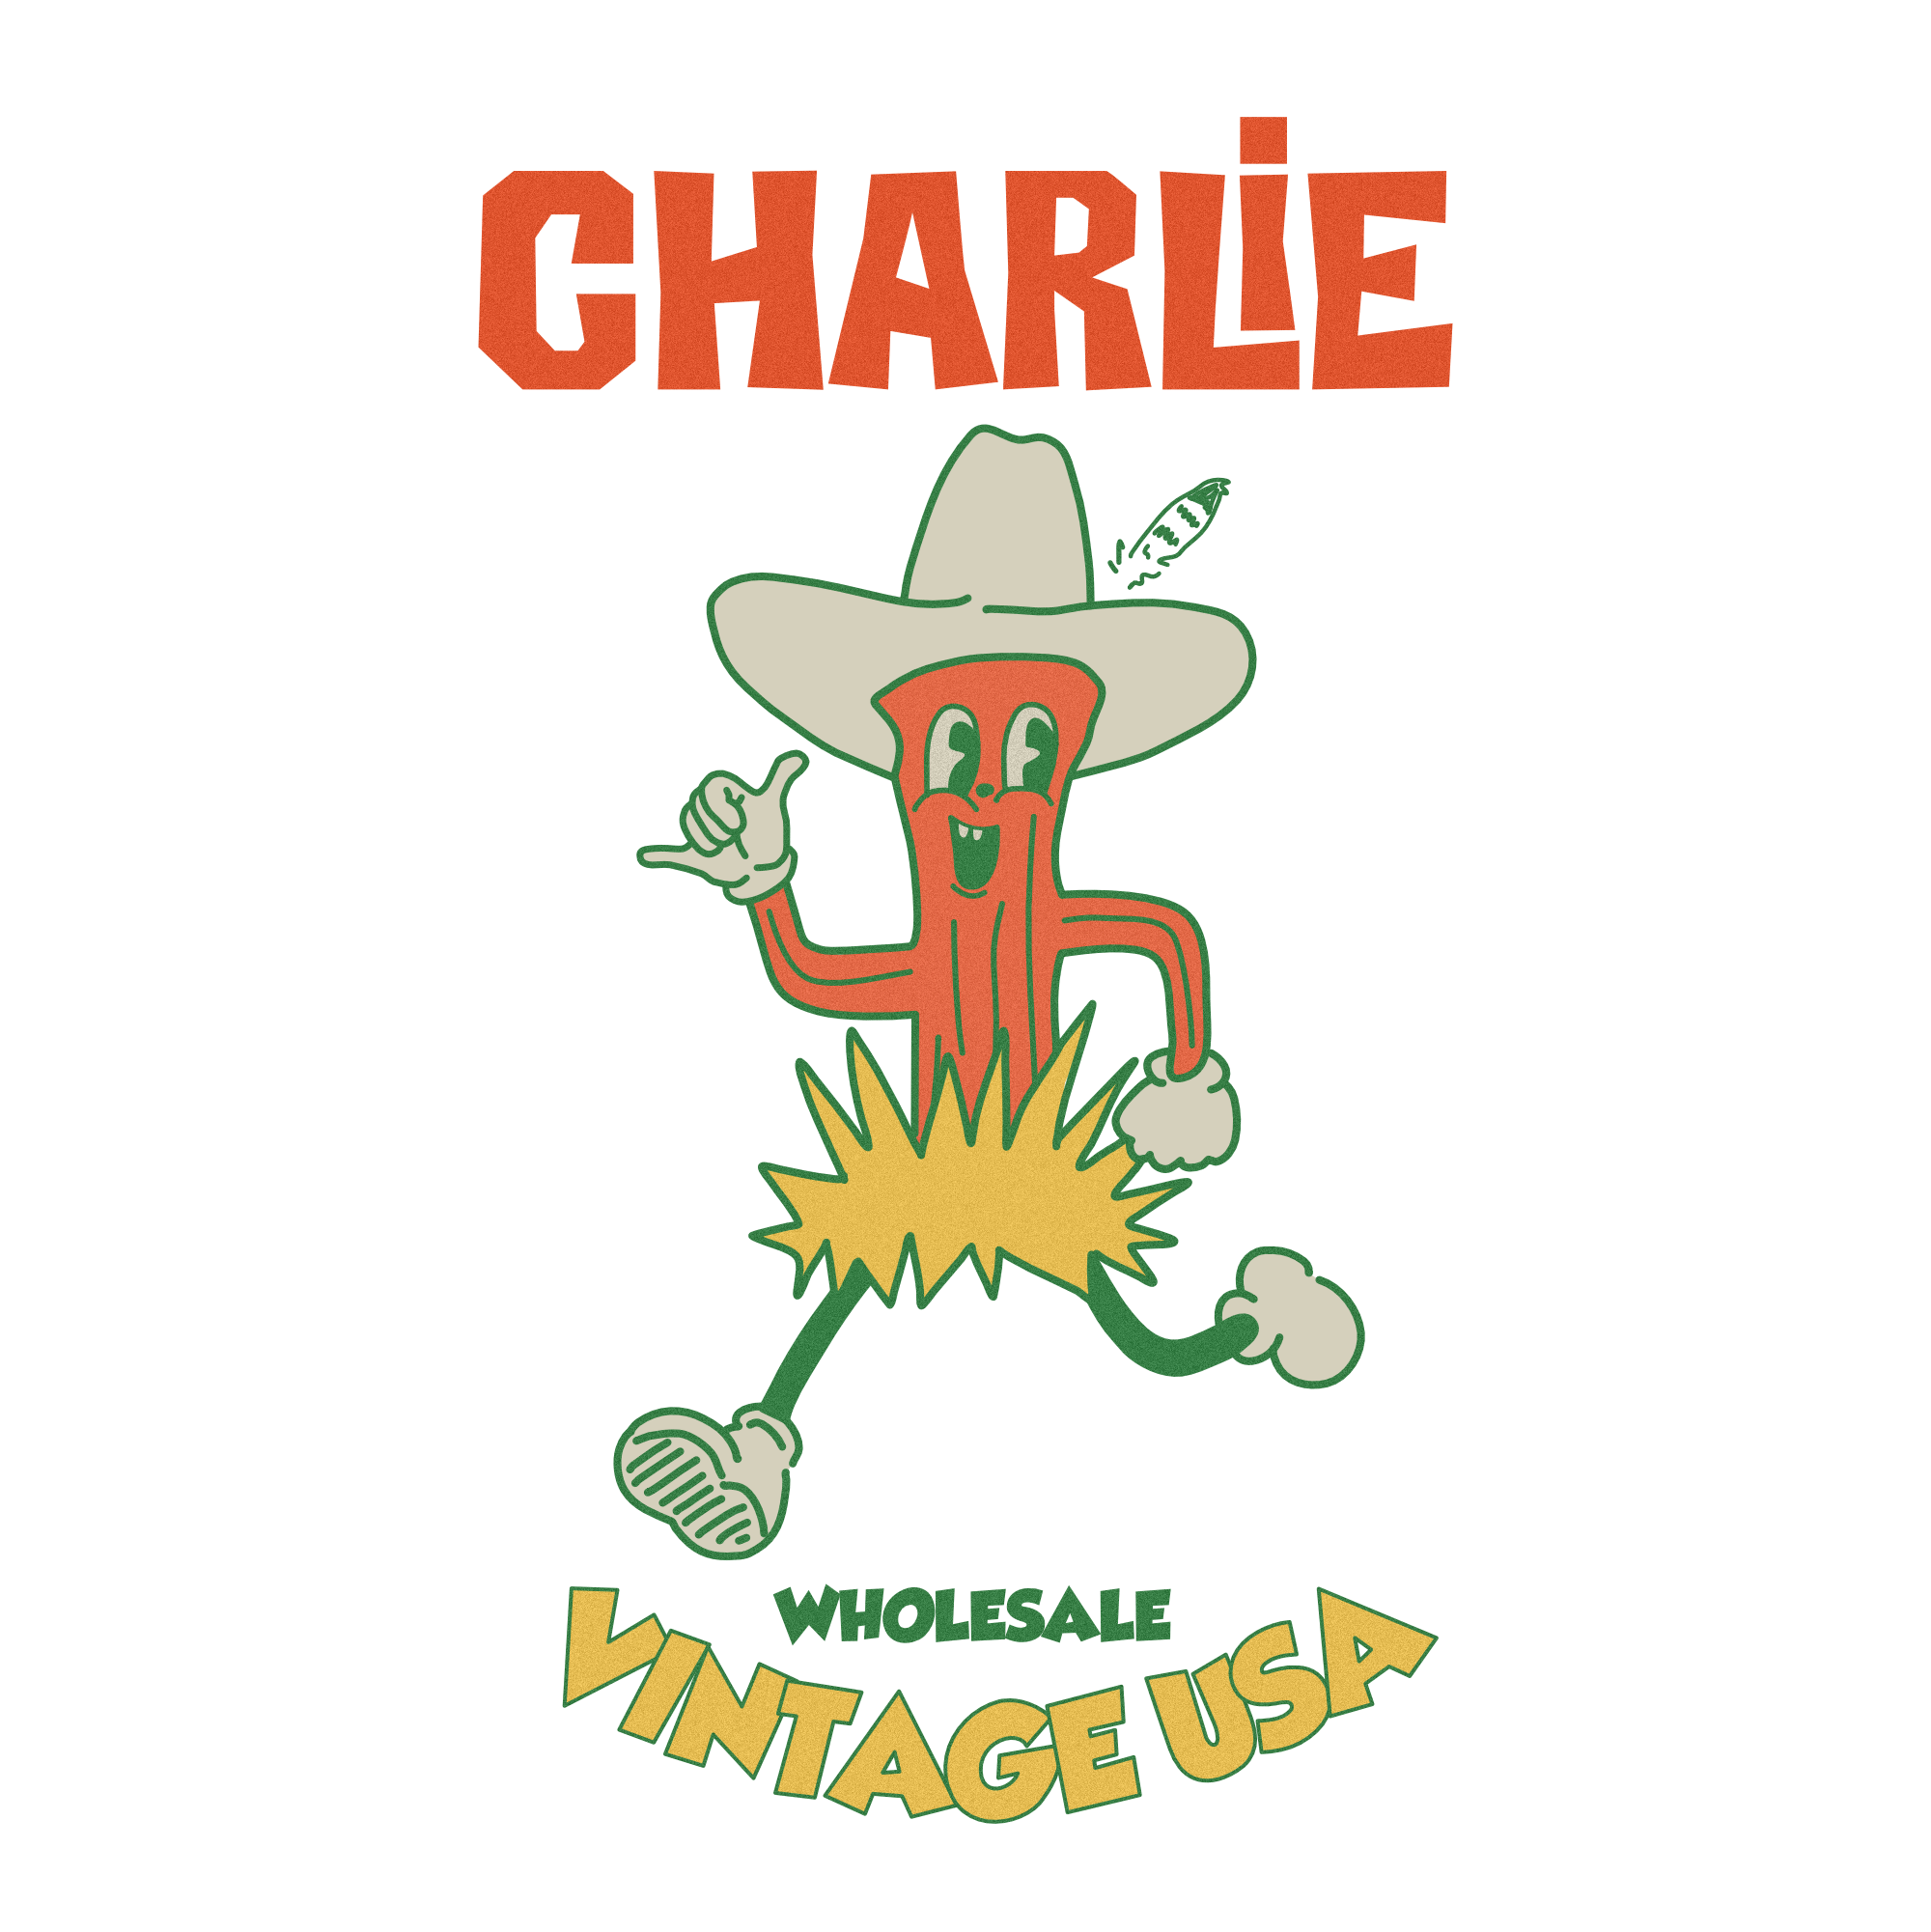 Charlie Wholesale Vintage